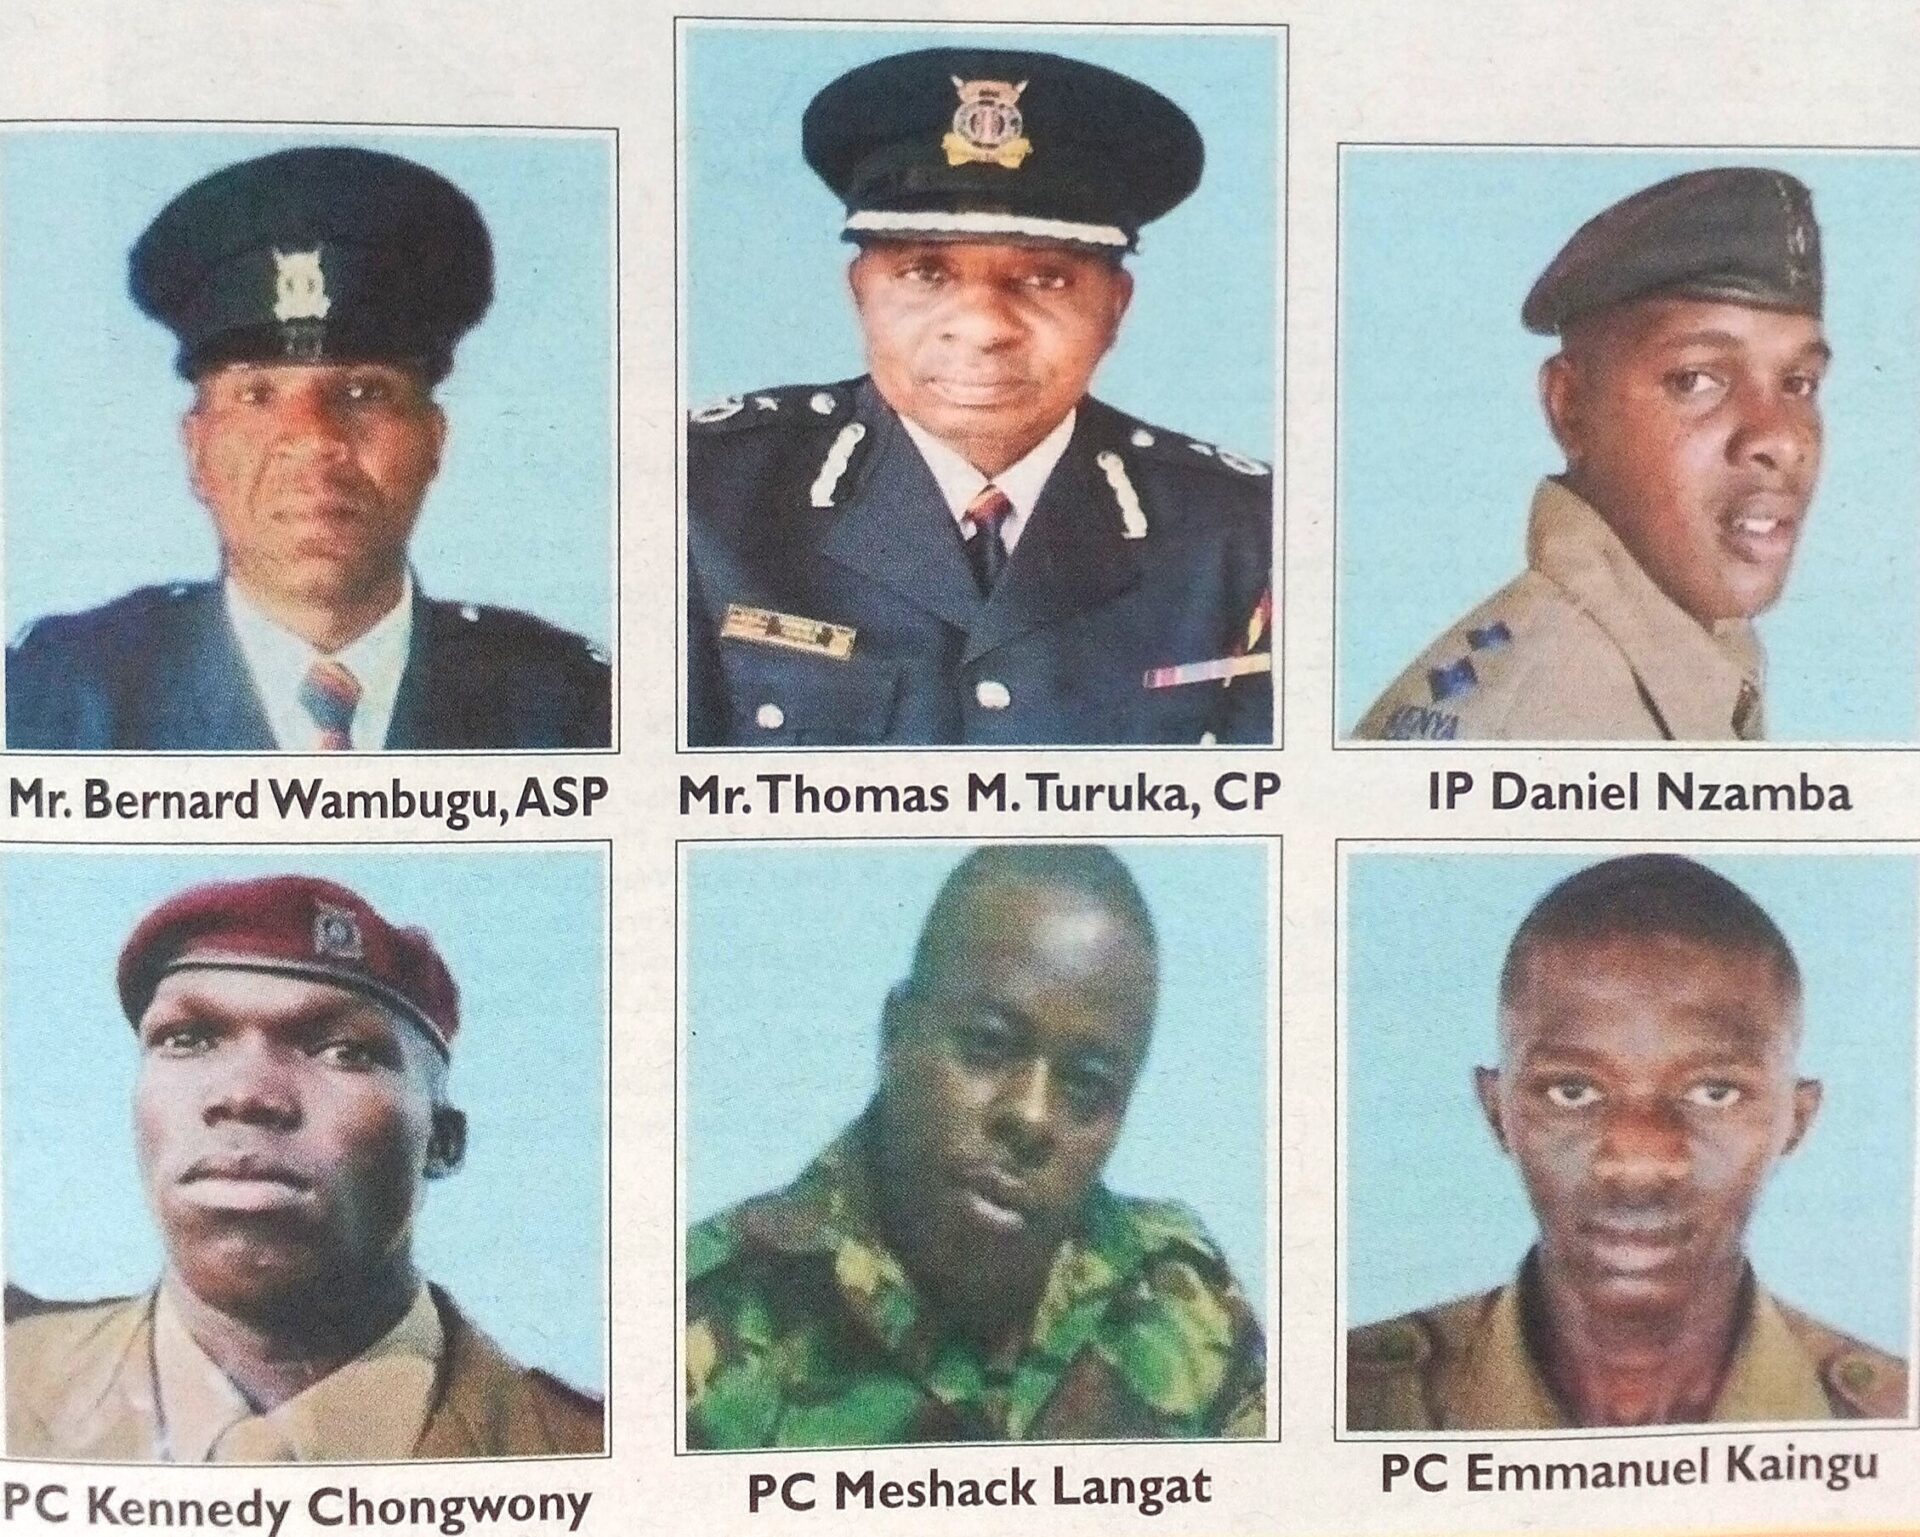 Obituary Image of Thomas. M. Turuka CP, Bernard Wambugu ASP, IP Daniel Nzamba, PC Kennedy Chongwony, PC Meshack Lang'at and PC Emmanuel Kaingu